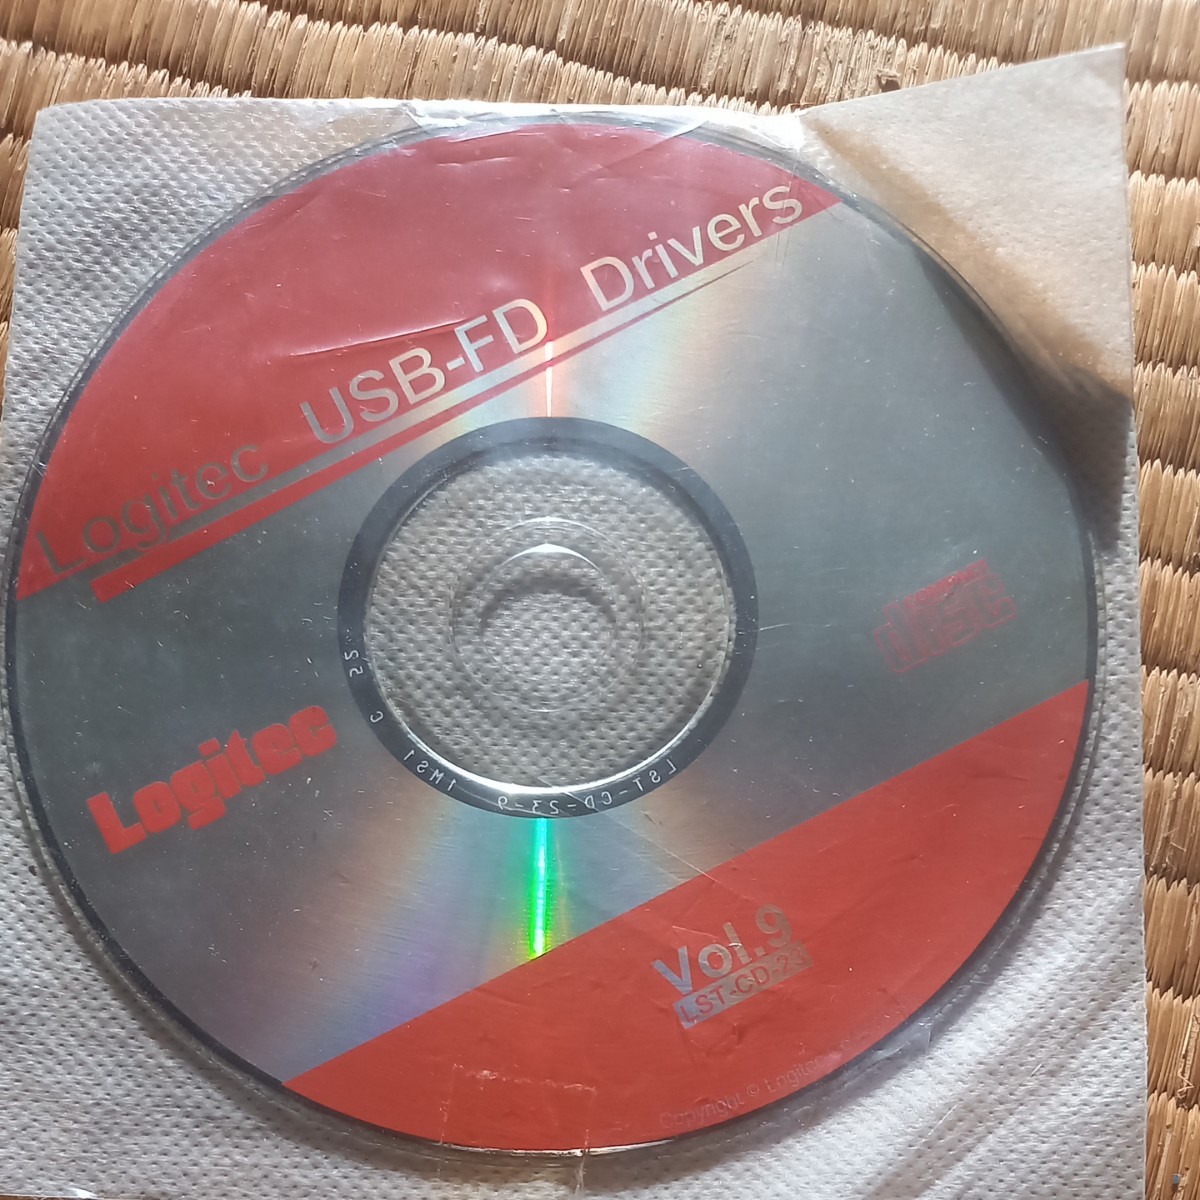 フロッピーディスクドライブ USB Logitec FDD　外付けです。